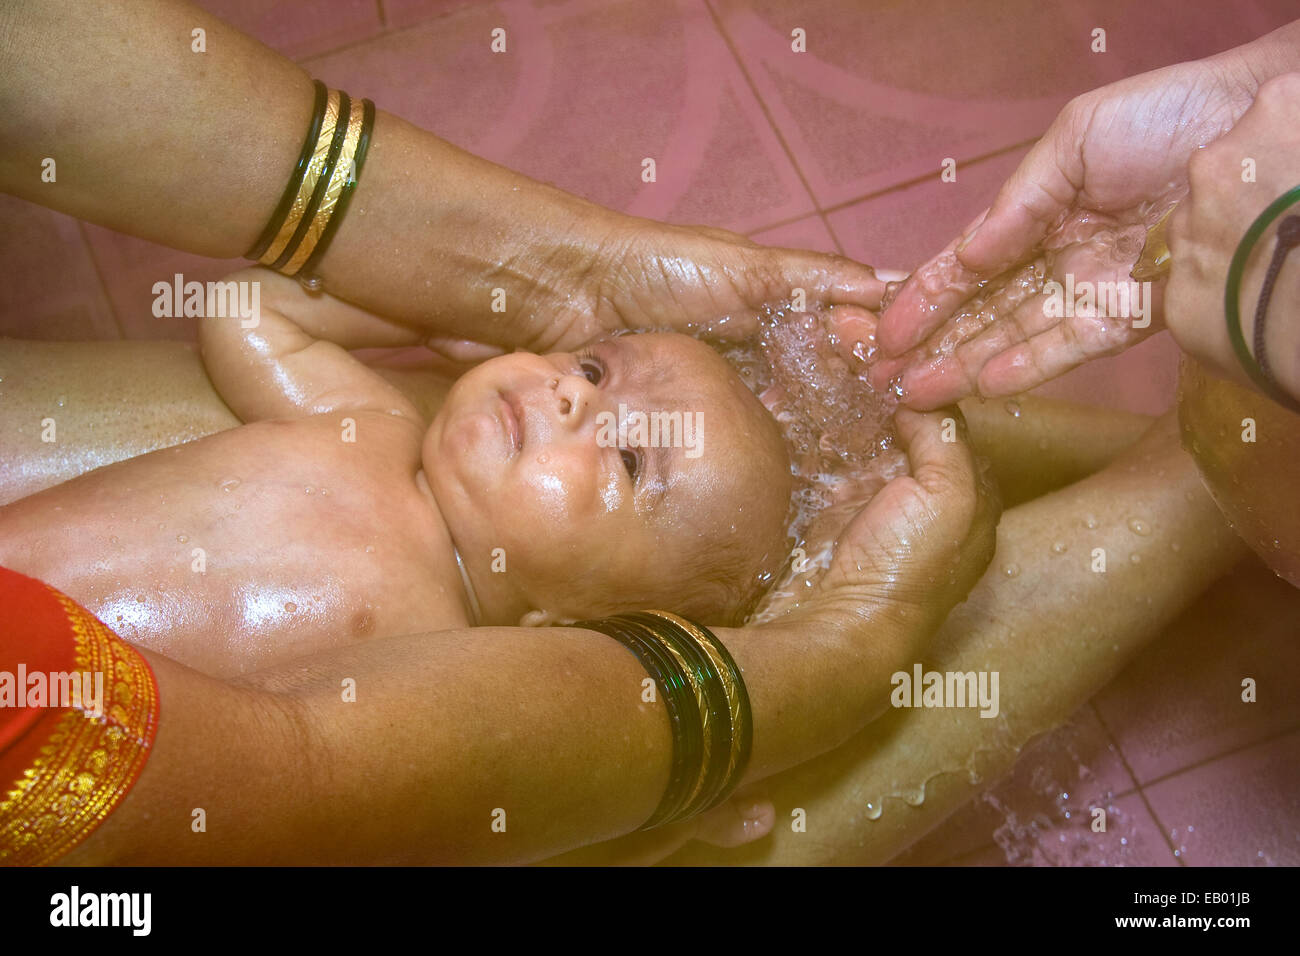 Un bambino indiano avente tradizionale, rilassante acqua calda bagno di testa Foto Stock